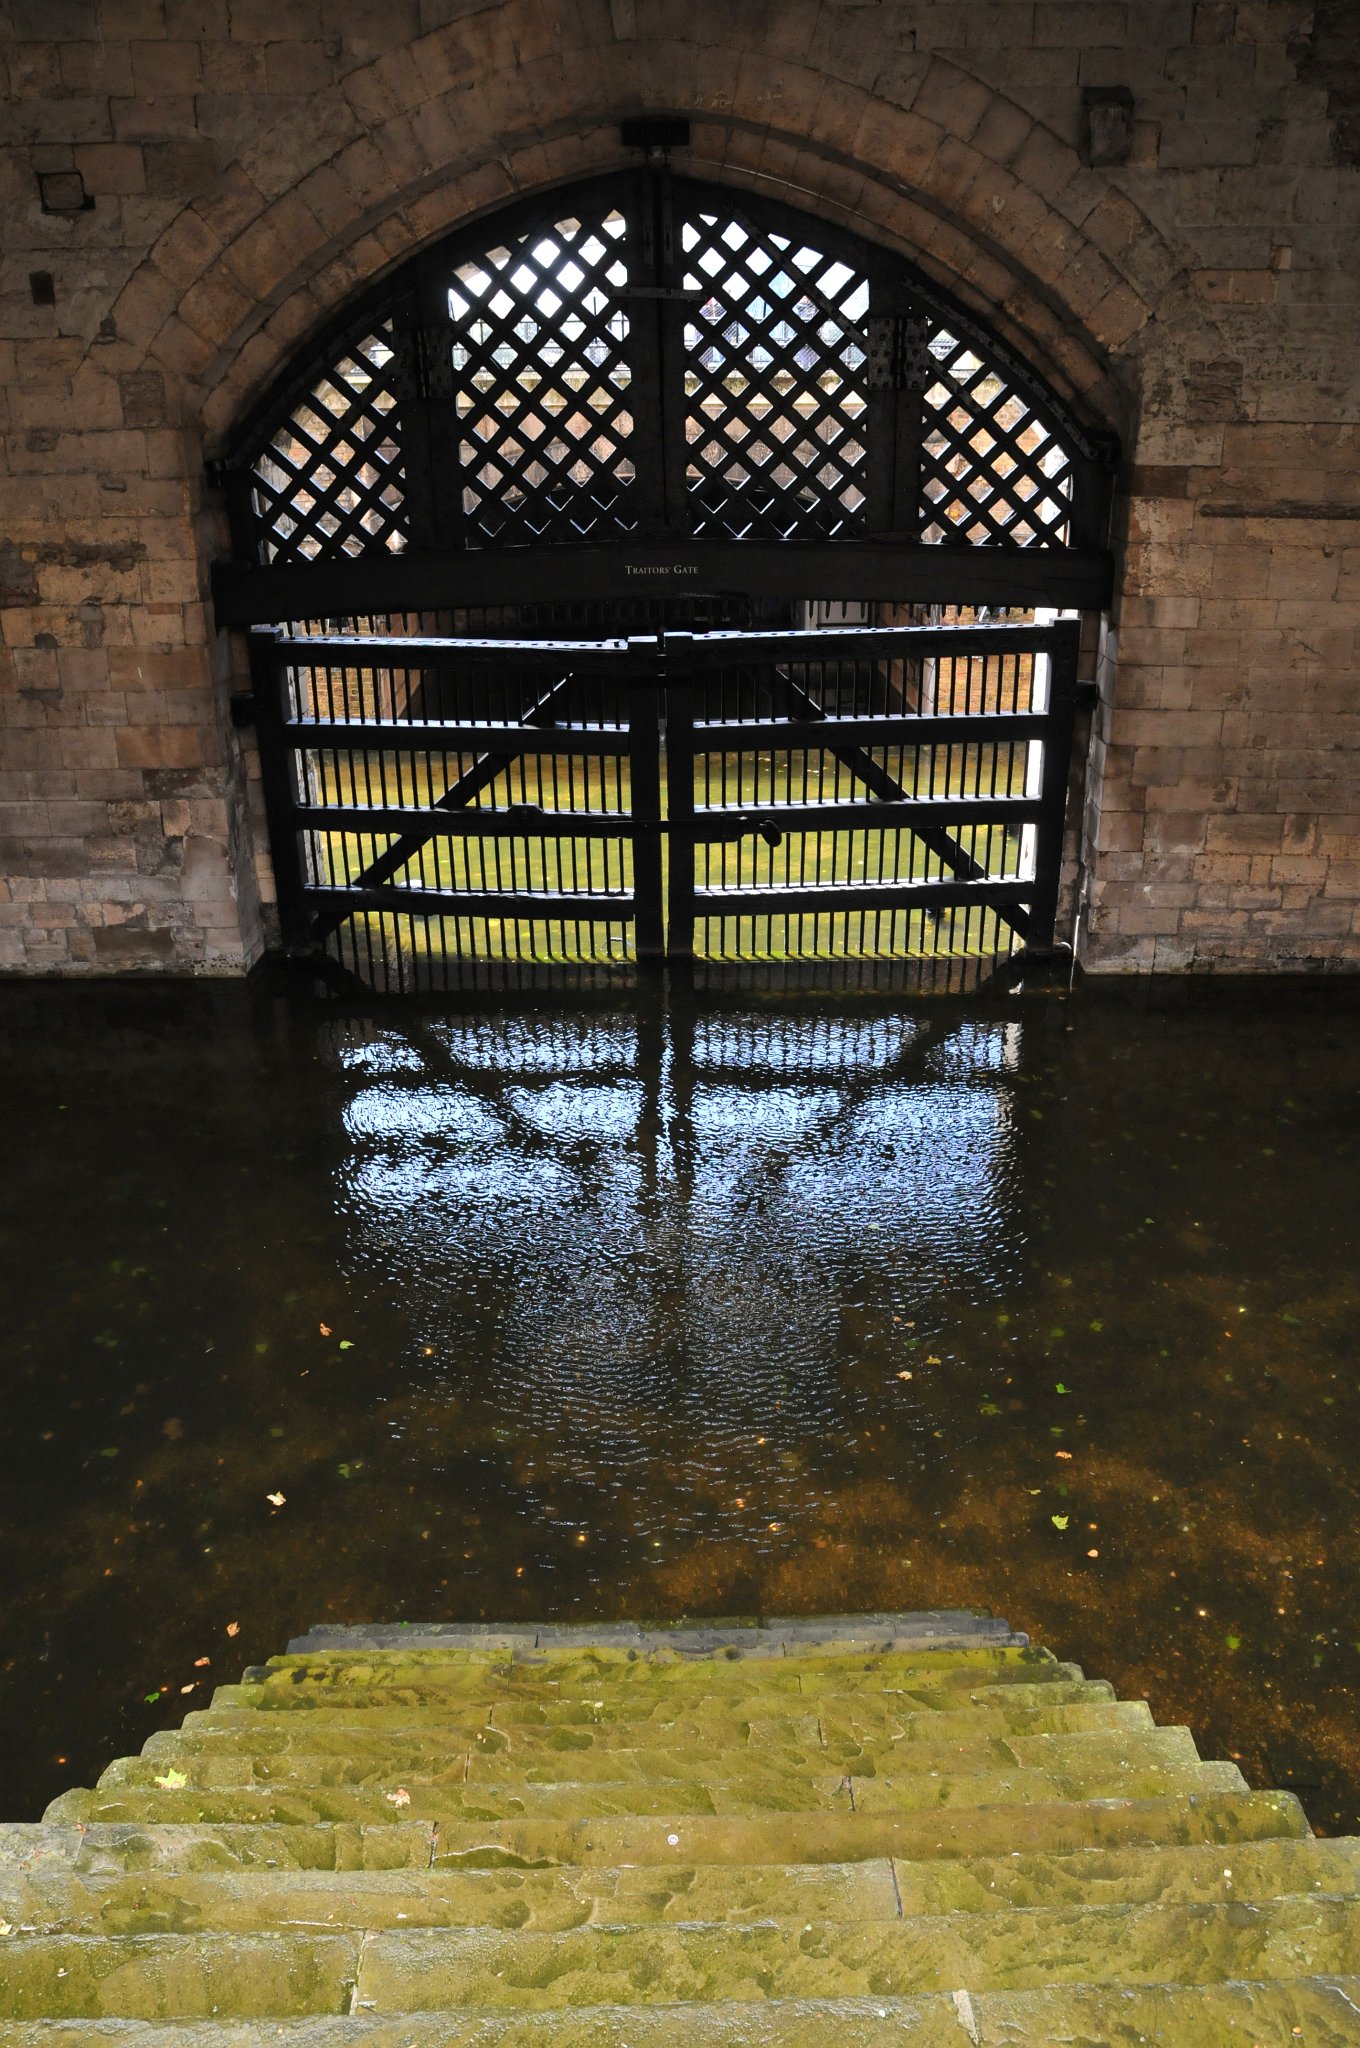 DSC_5495_2.jpg - Návštěvníci dnes do Toweru vstupují z Water Lane, ale kdysi dávno sem většinu vězňů přiváželi skrze Traitors’ Gate (Branou zrádců) obrácenou k řece.